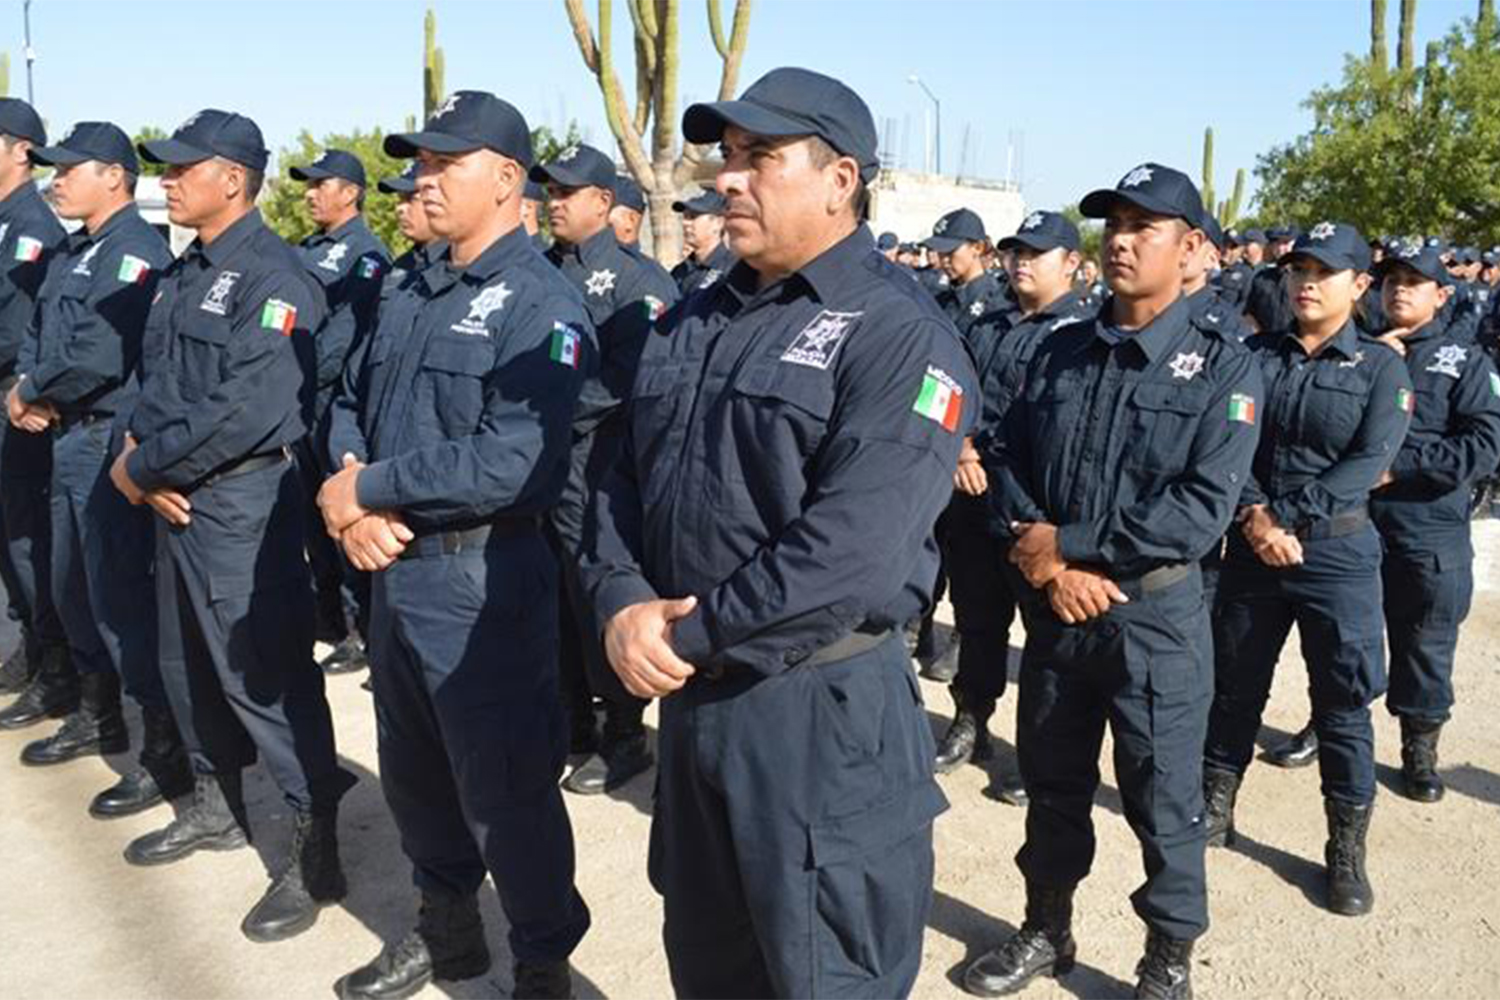 pobreza Vivienda Vagabundo Dotan de 1,200 uniformes y 191 armas a policías estatales y penitenciarios  de BCS - BCS Noticias